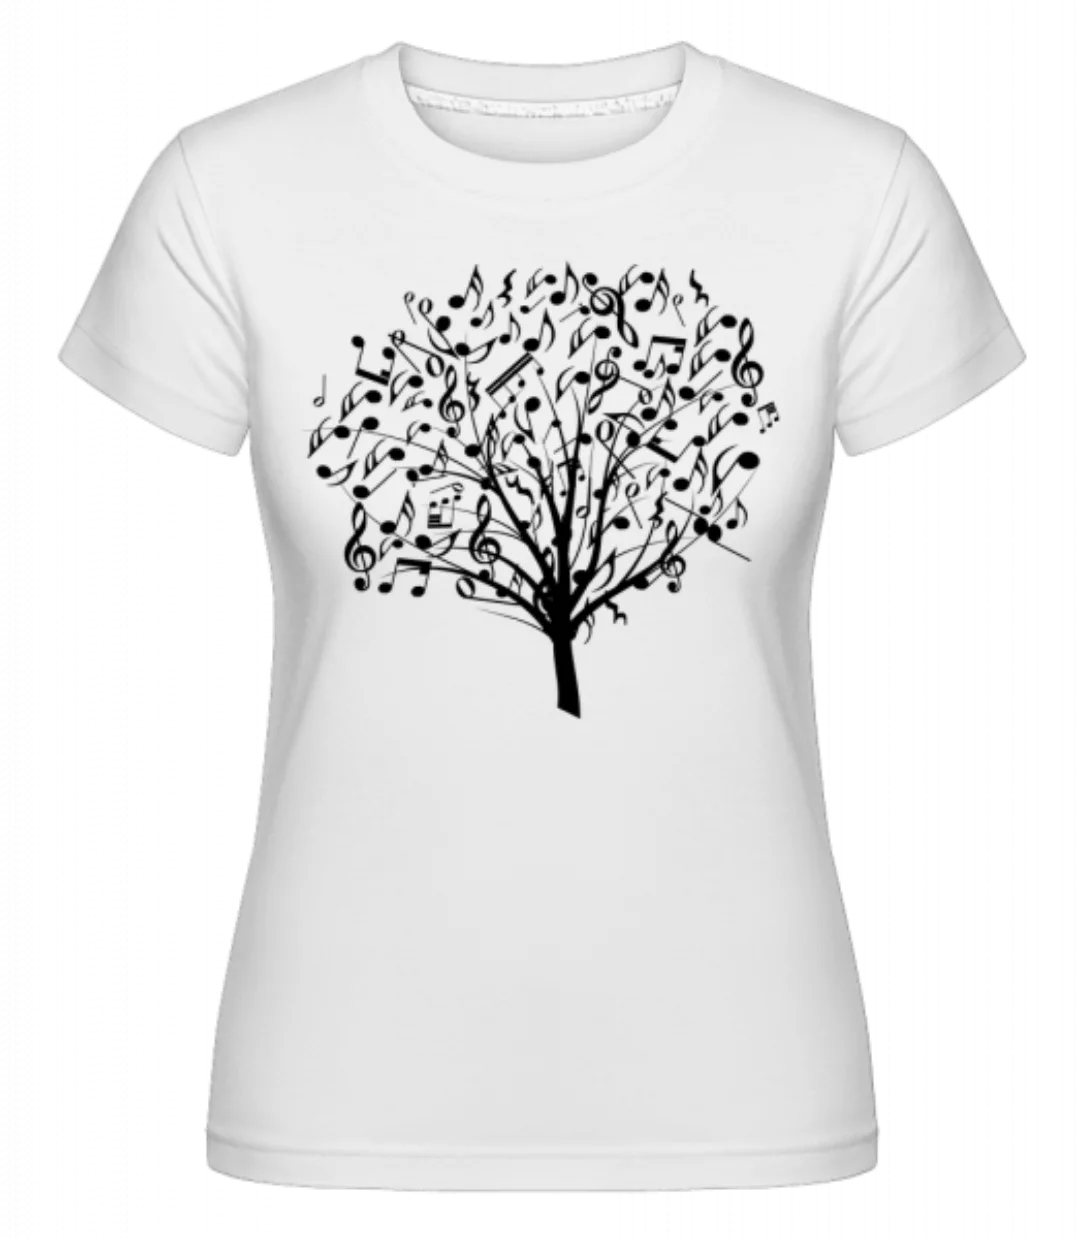 Musikbaum · Shirtinator Frauen T-Shirt günstig online kaufen